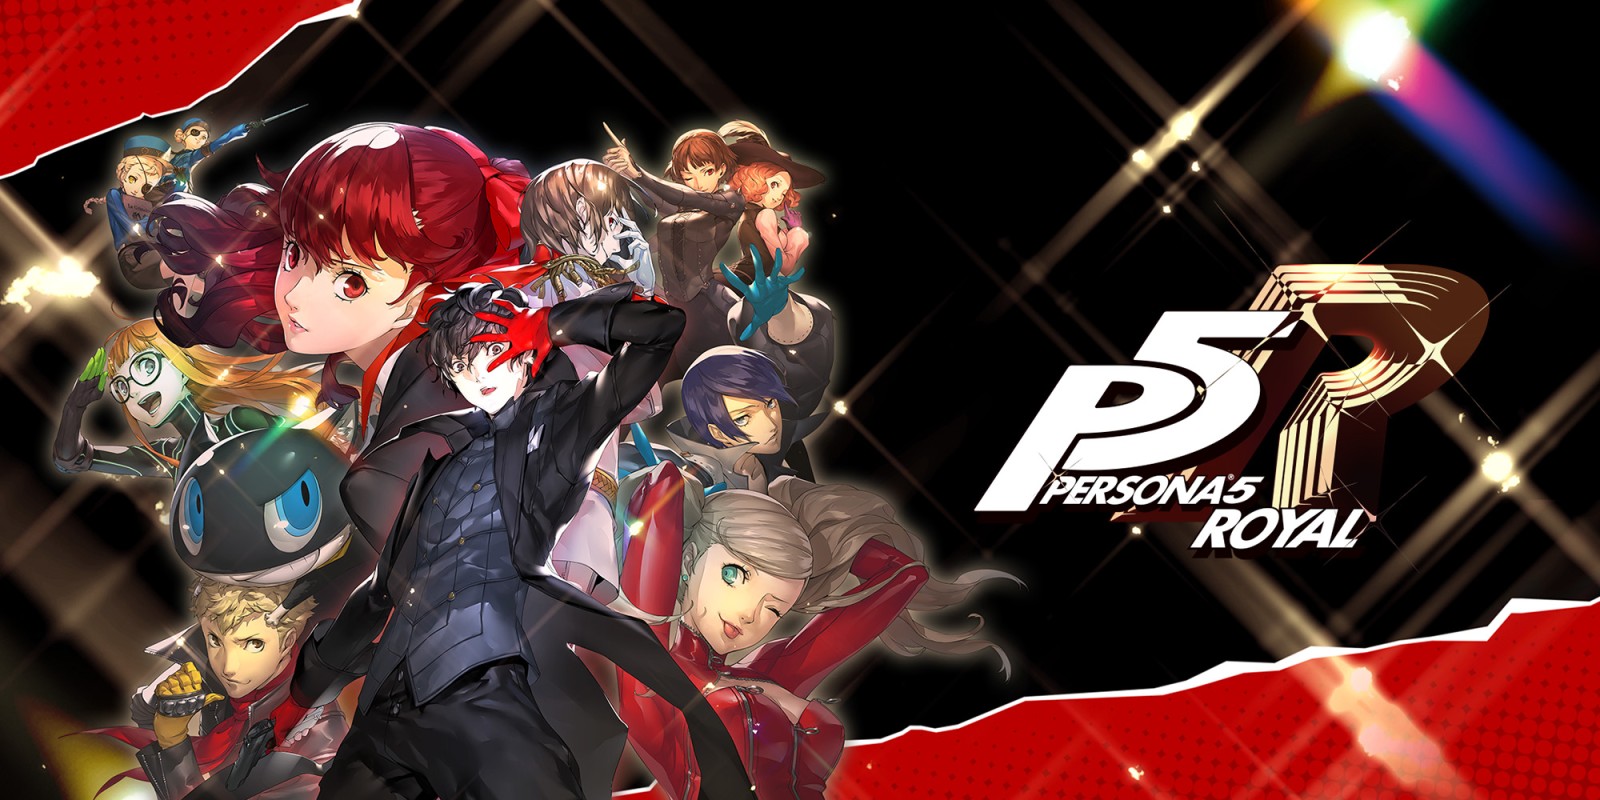 Les propriétaires de Persona 5 Royal ne recevront pas la mise à niveau gratuite de PlayStation 5 